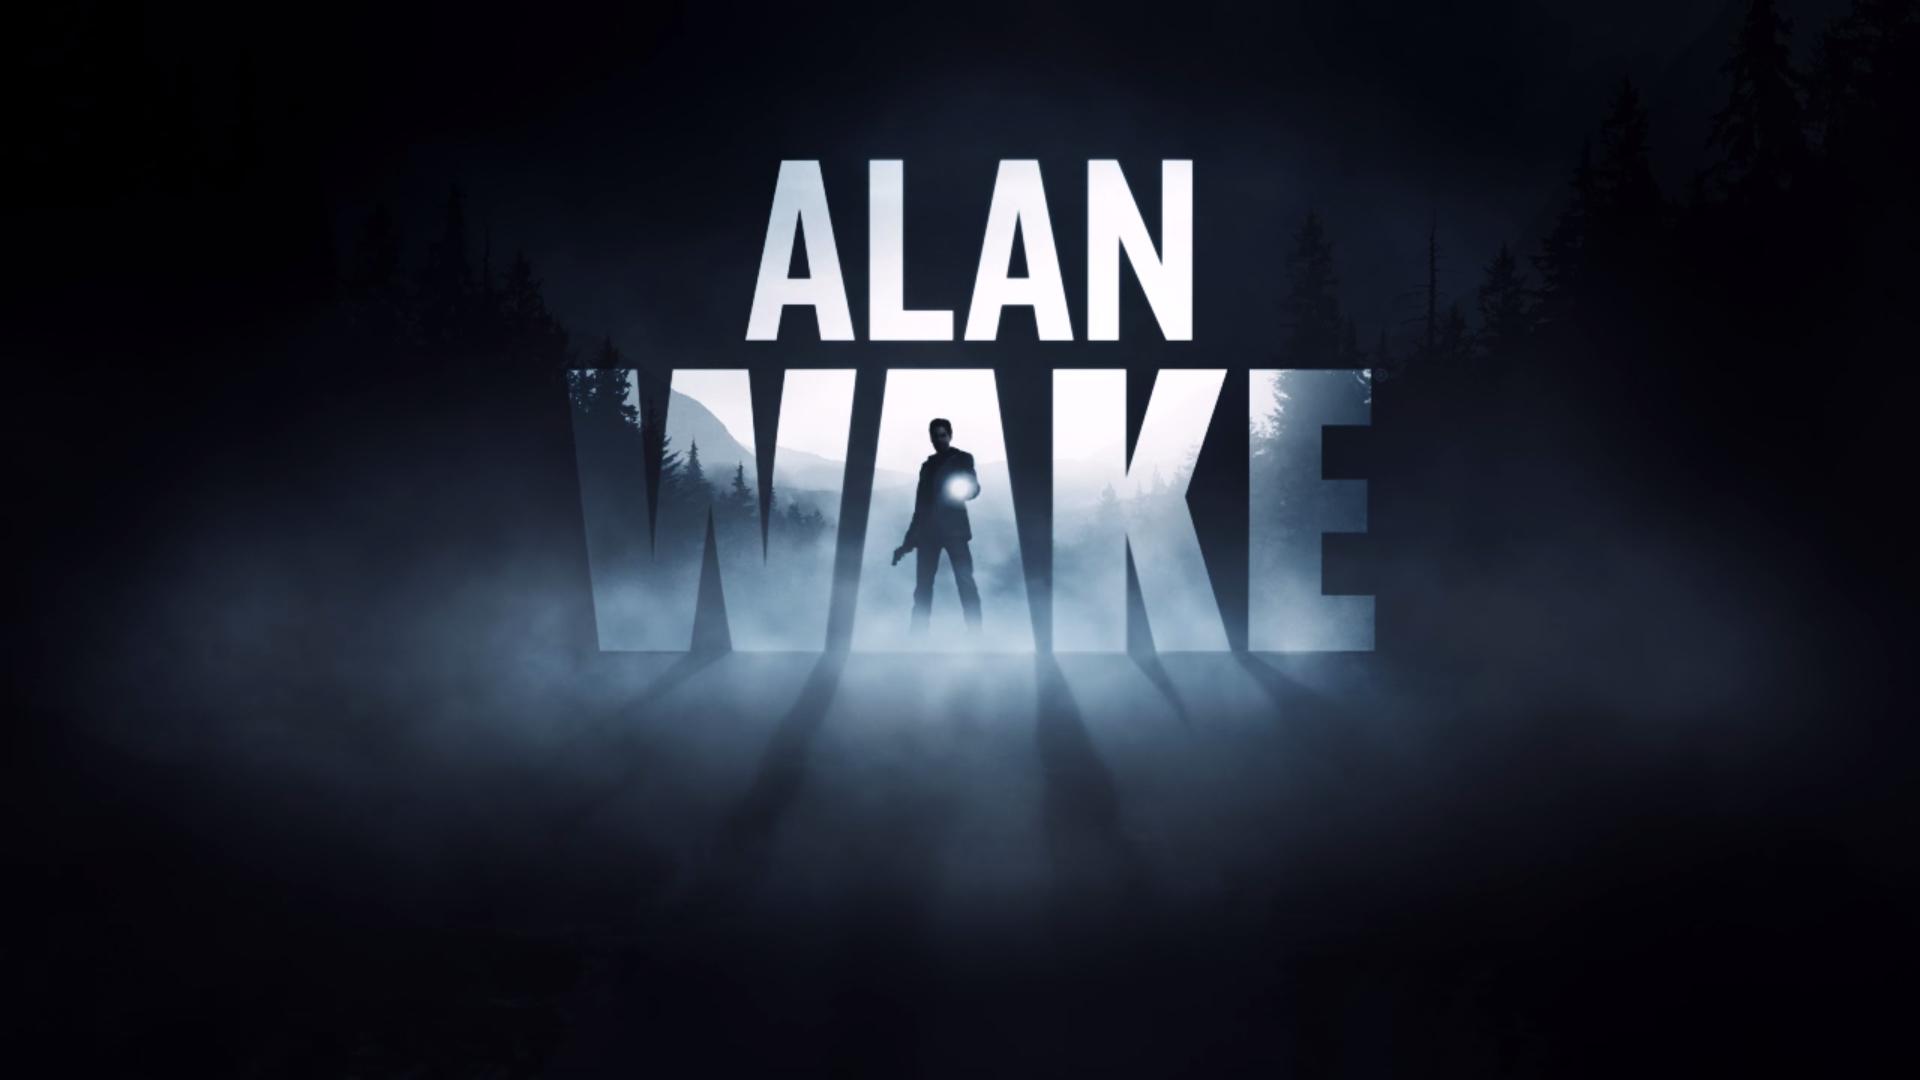 alan wake remastered 1.04